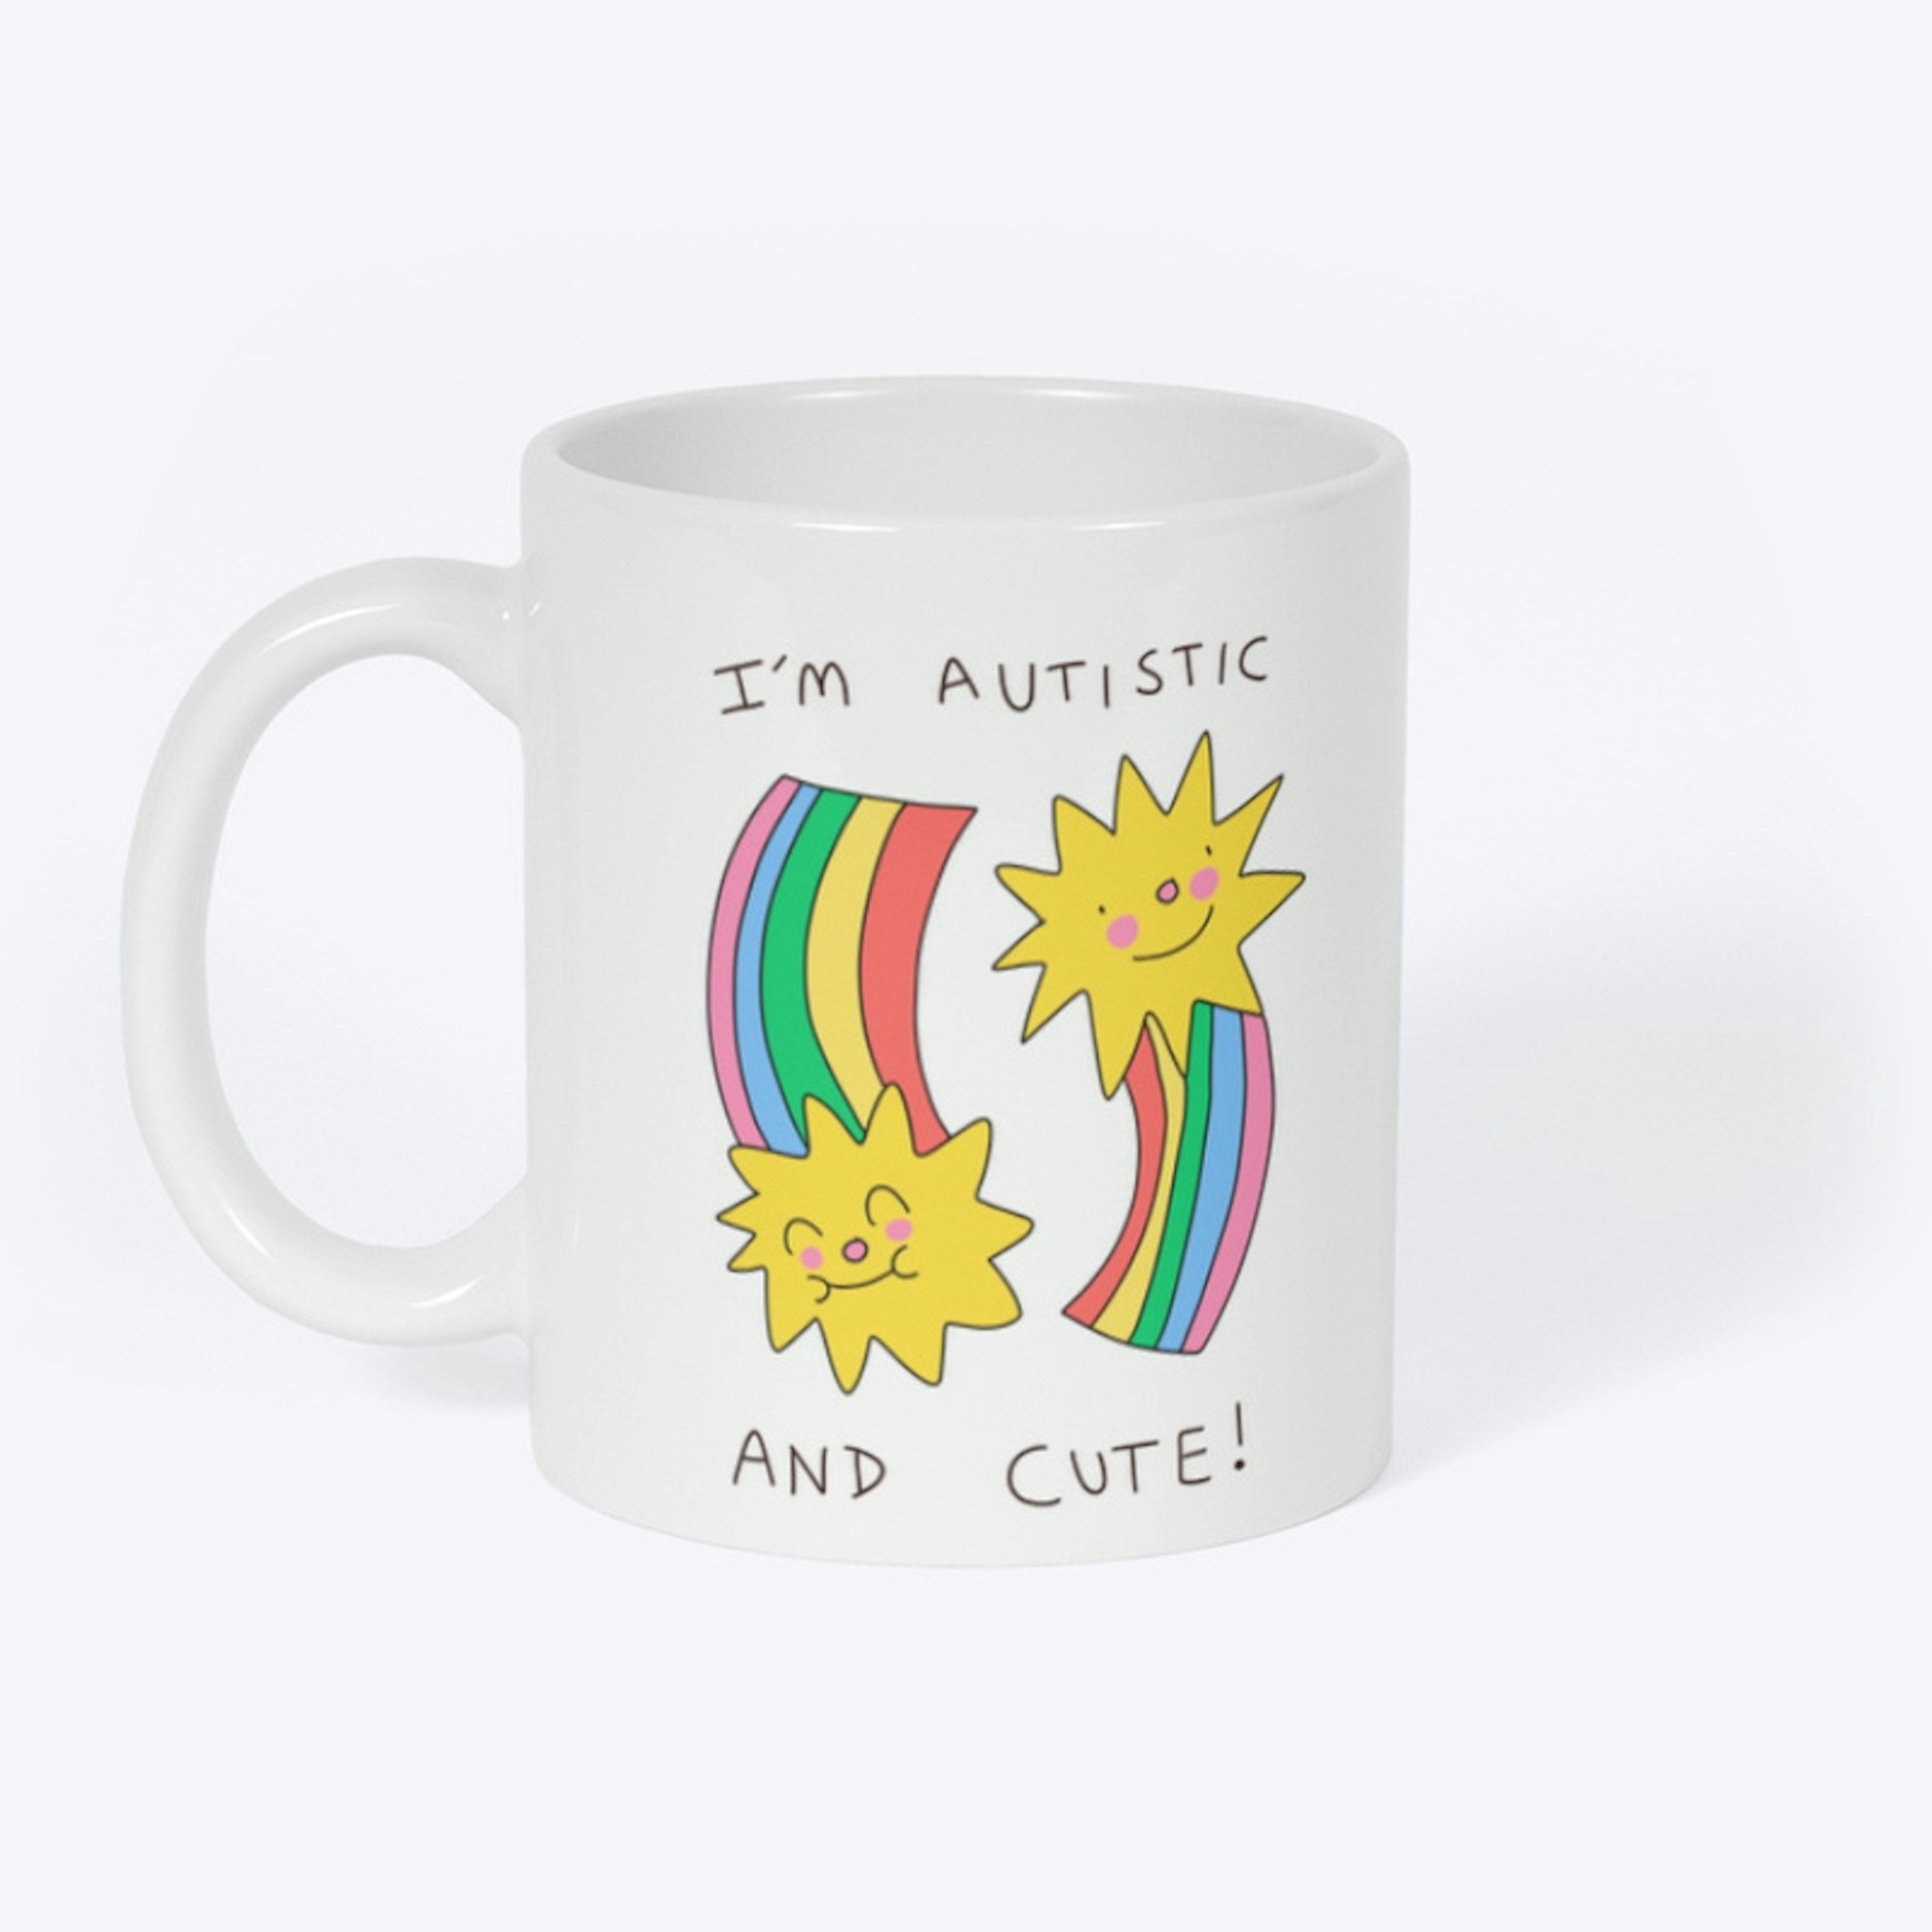 I’m autistic and cute!